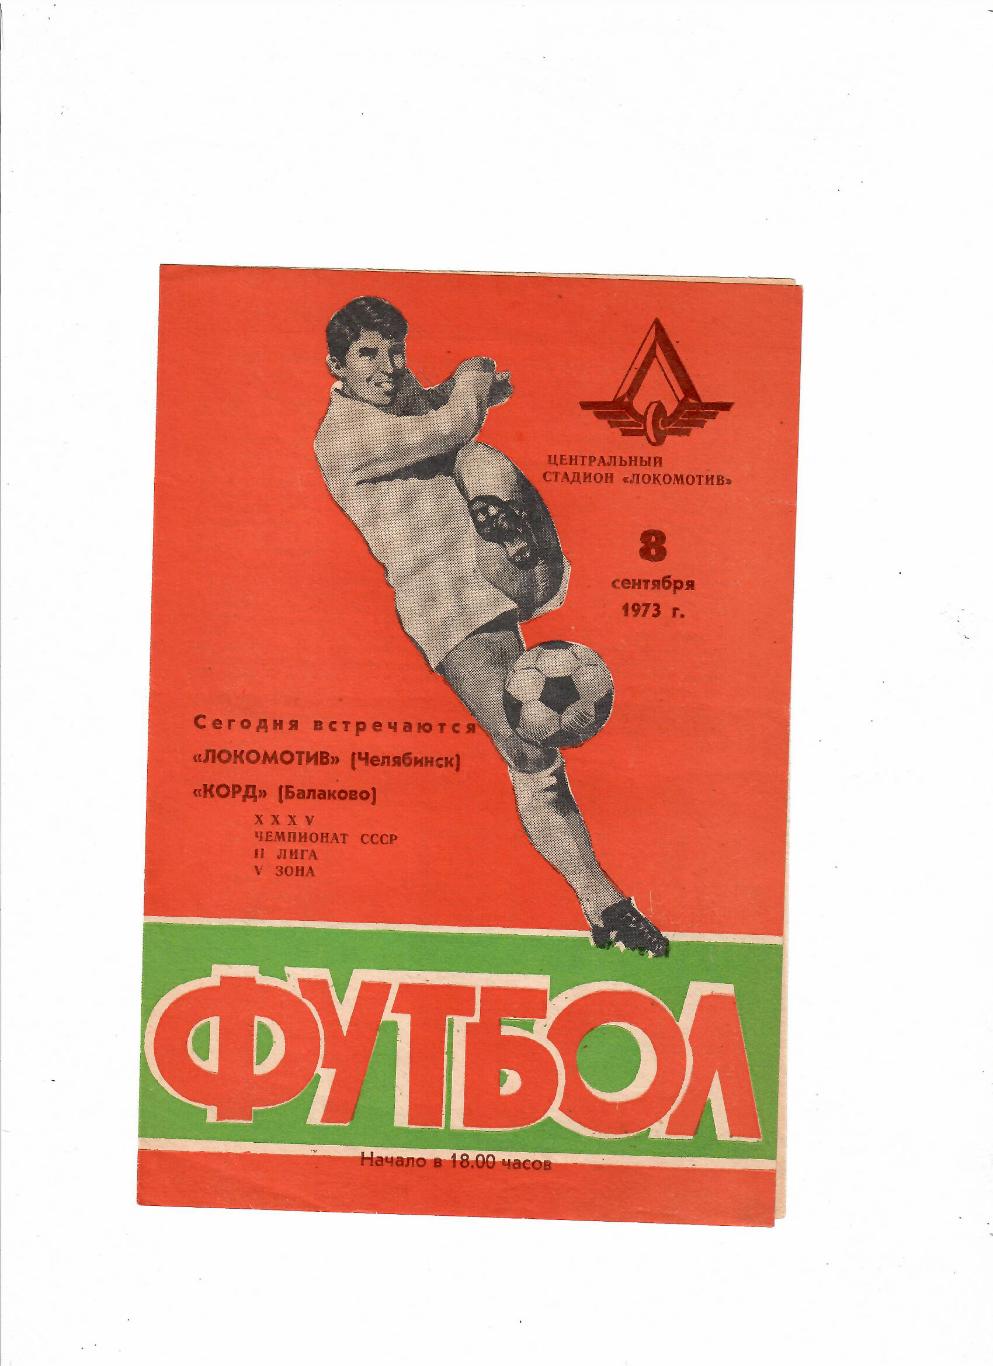 Локомотив Челябинск-Корд Балаково 1973